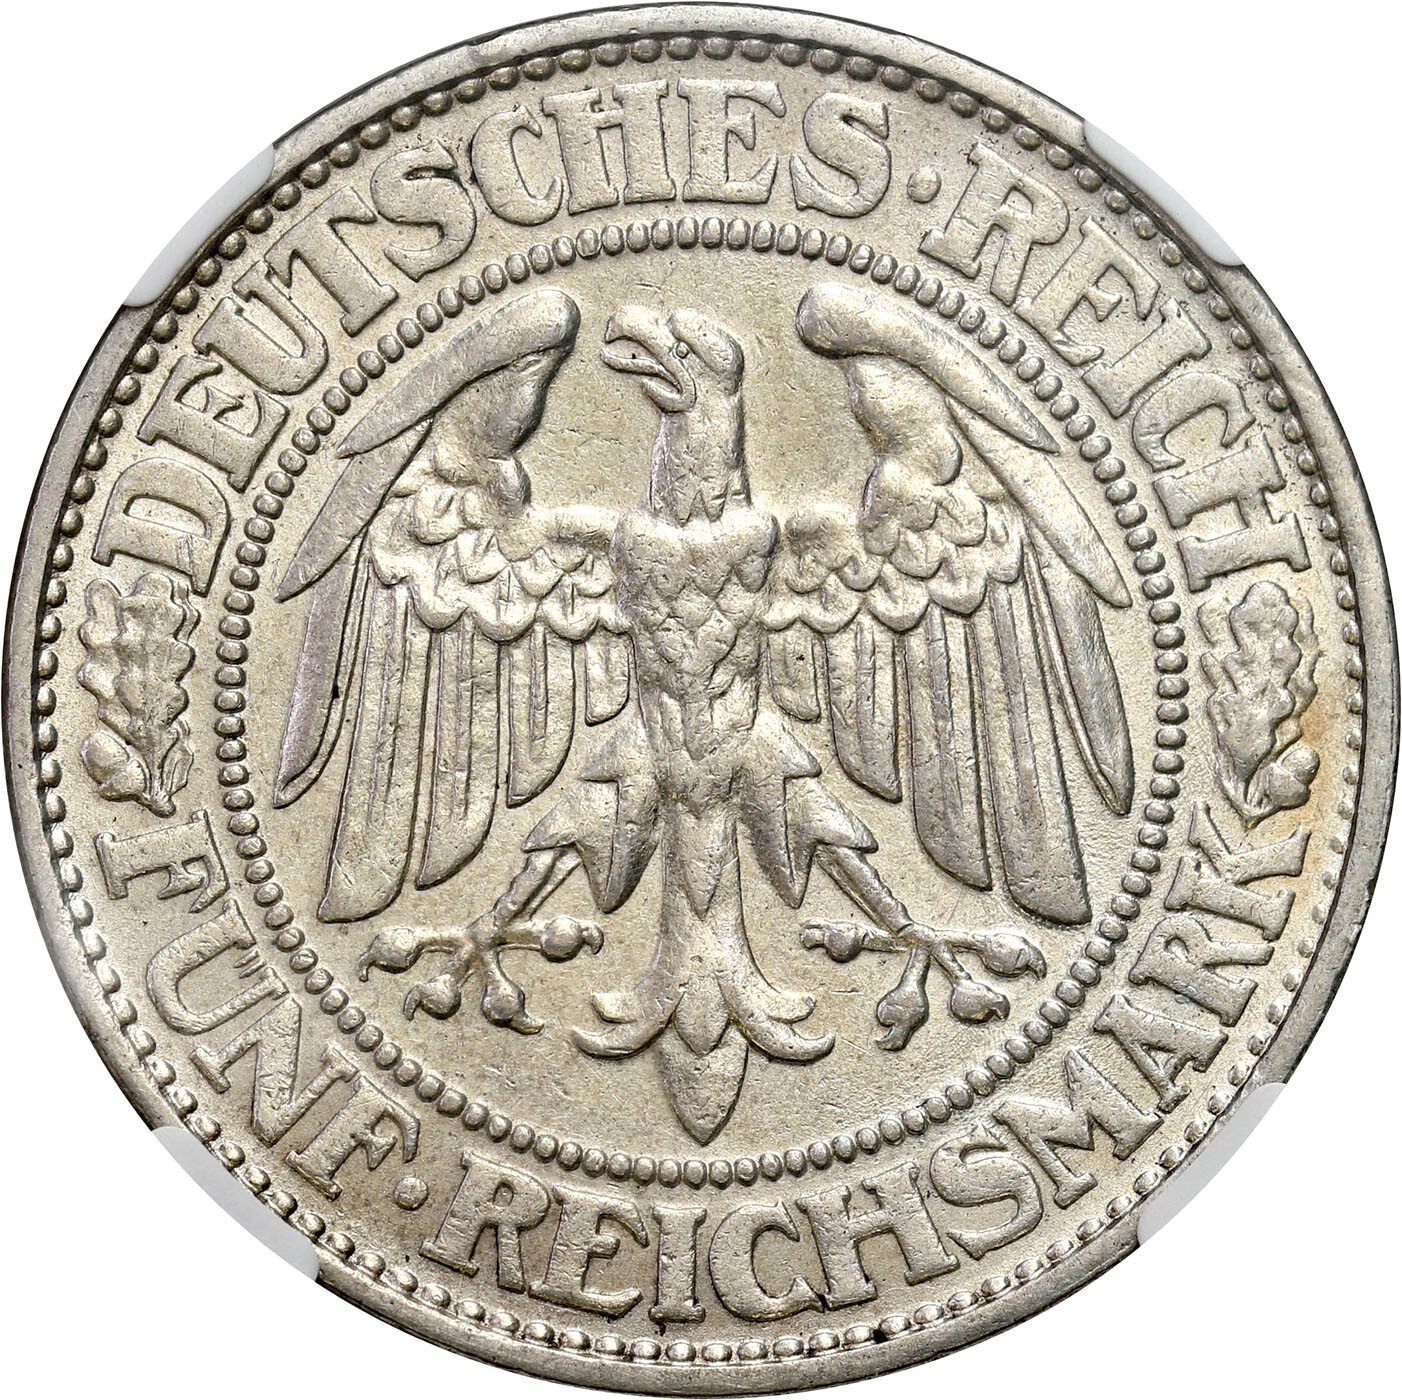 Niemcy, Weimar. 5 marek 1928 D, Monachium NGC AU58